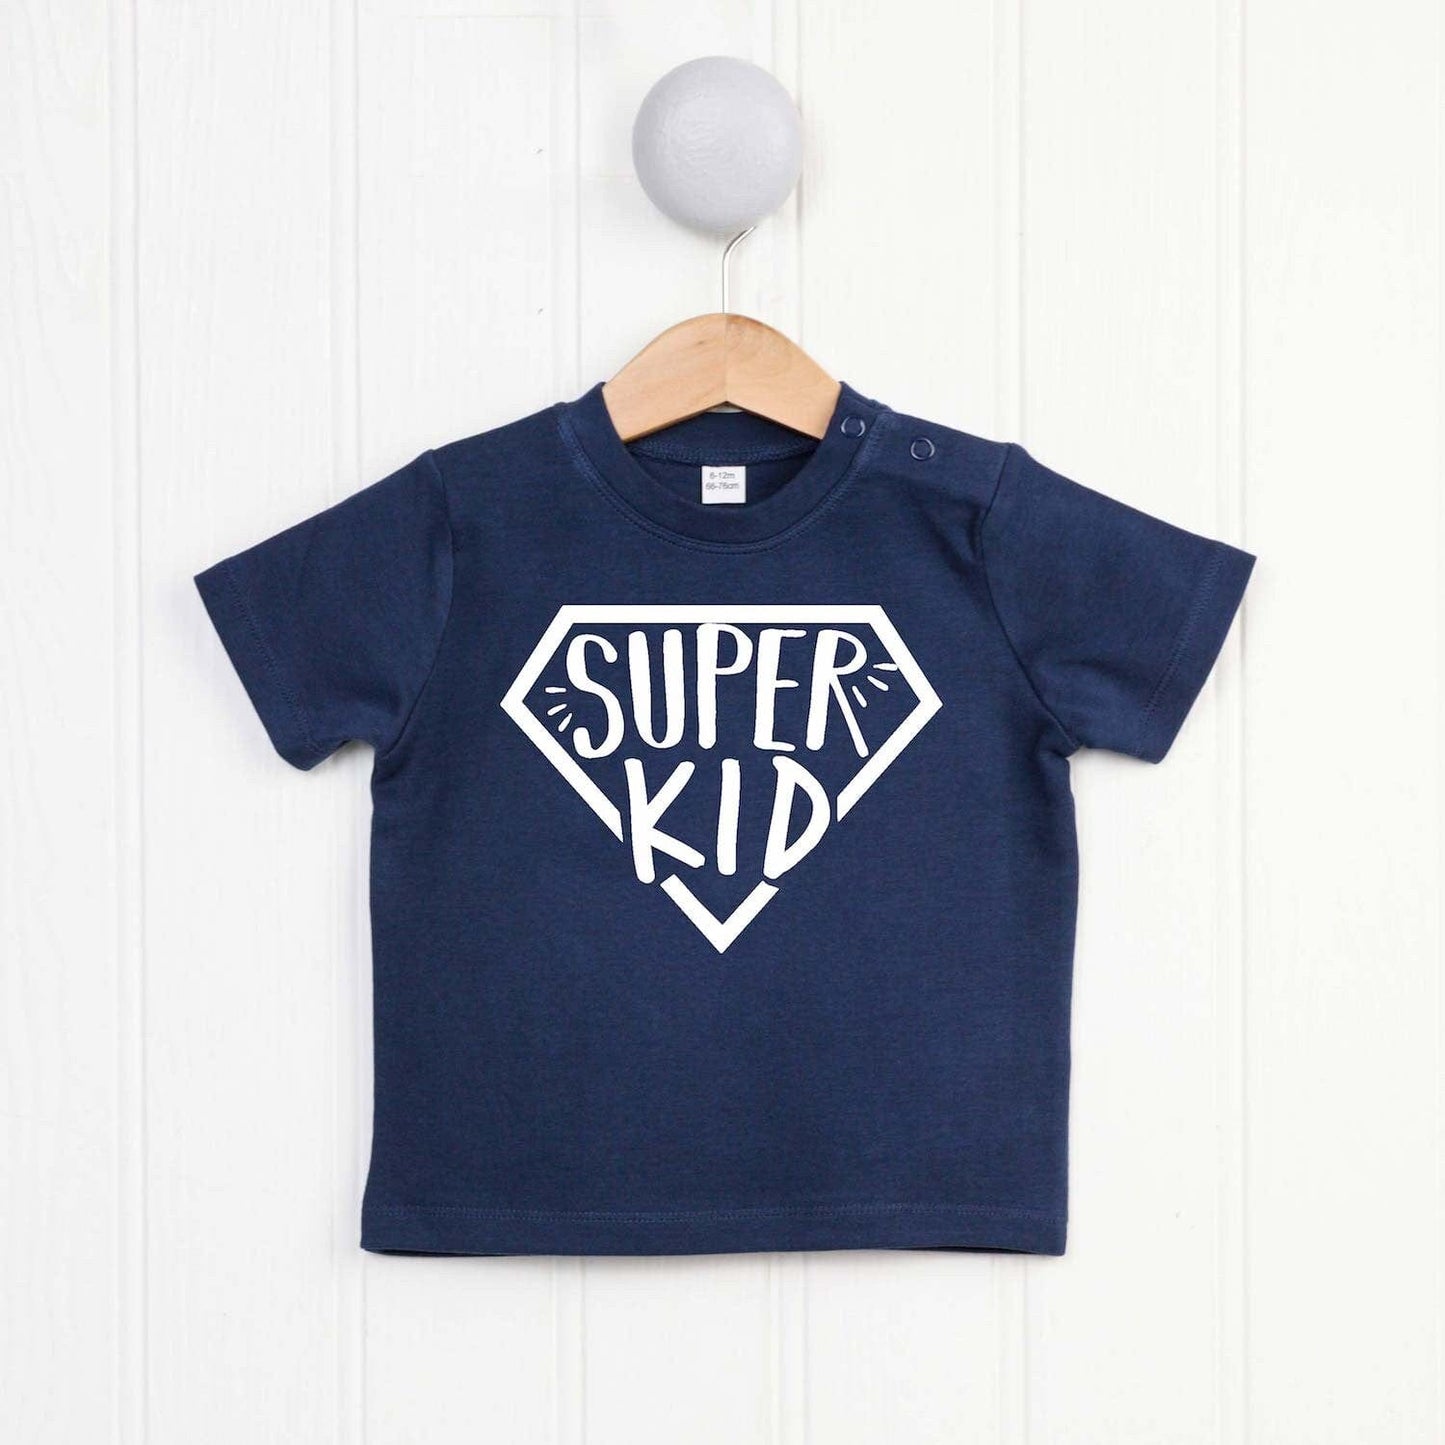 Super Kid T Shirt, super hero birthday gift, cute kids superhero clothing